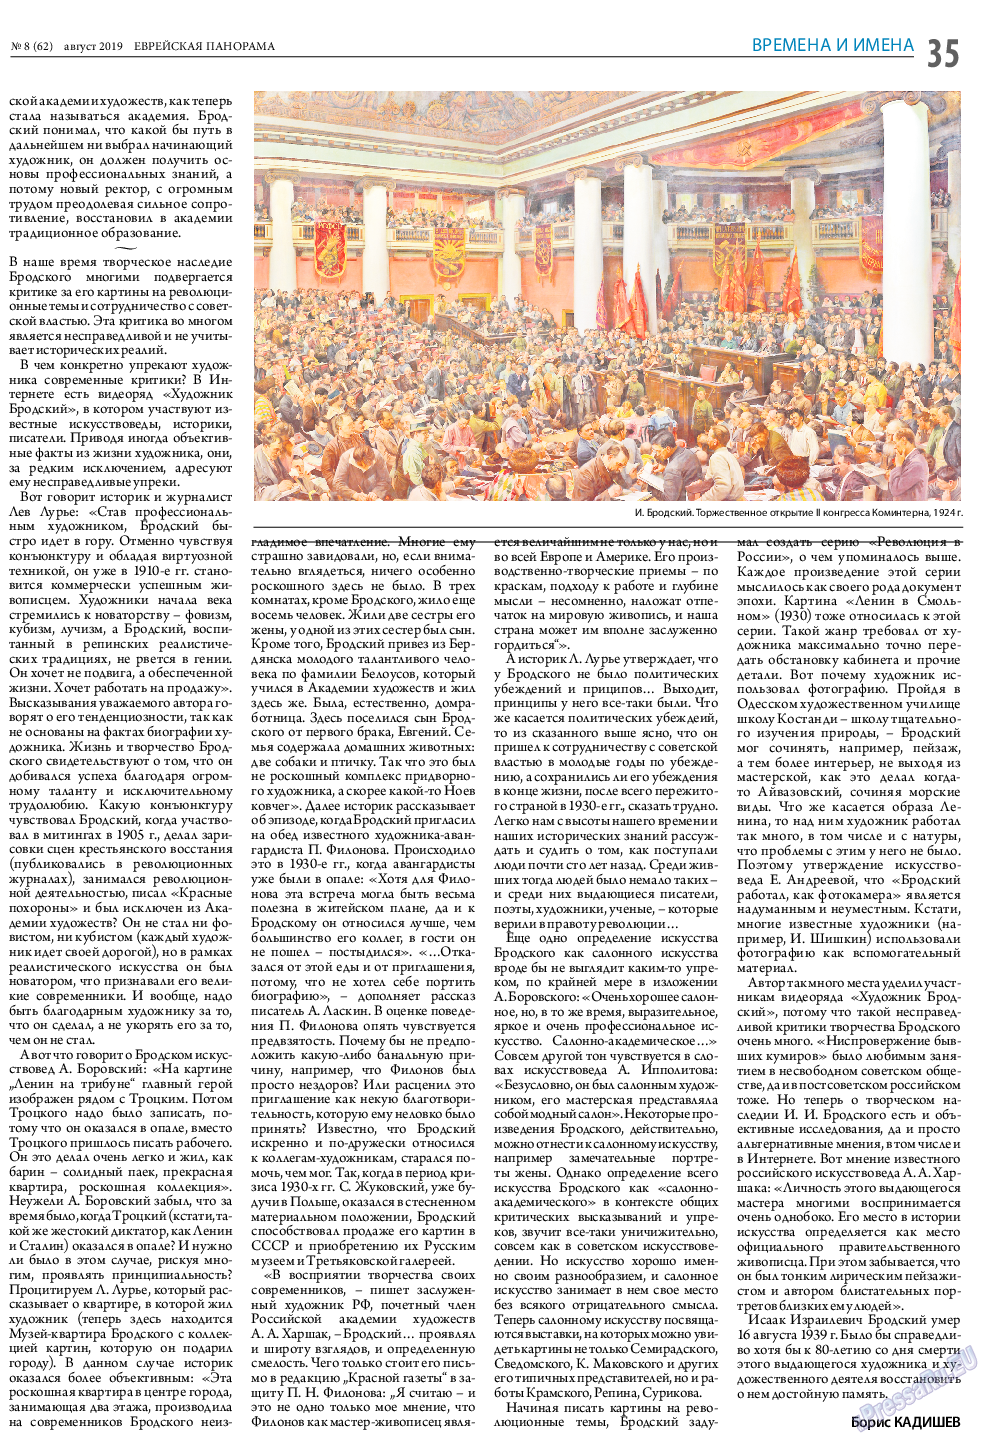 Еврейская панорама (газета). 2019 год, номер 8, стр. 35